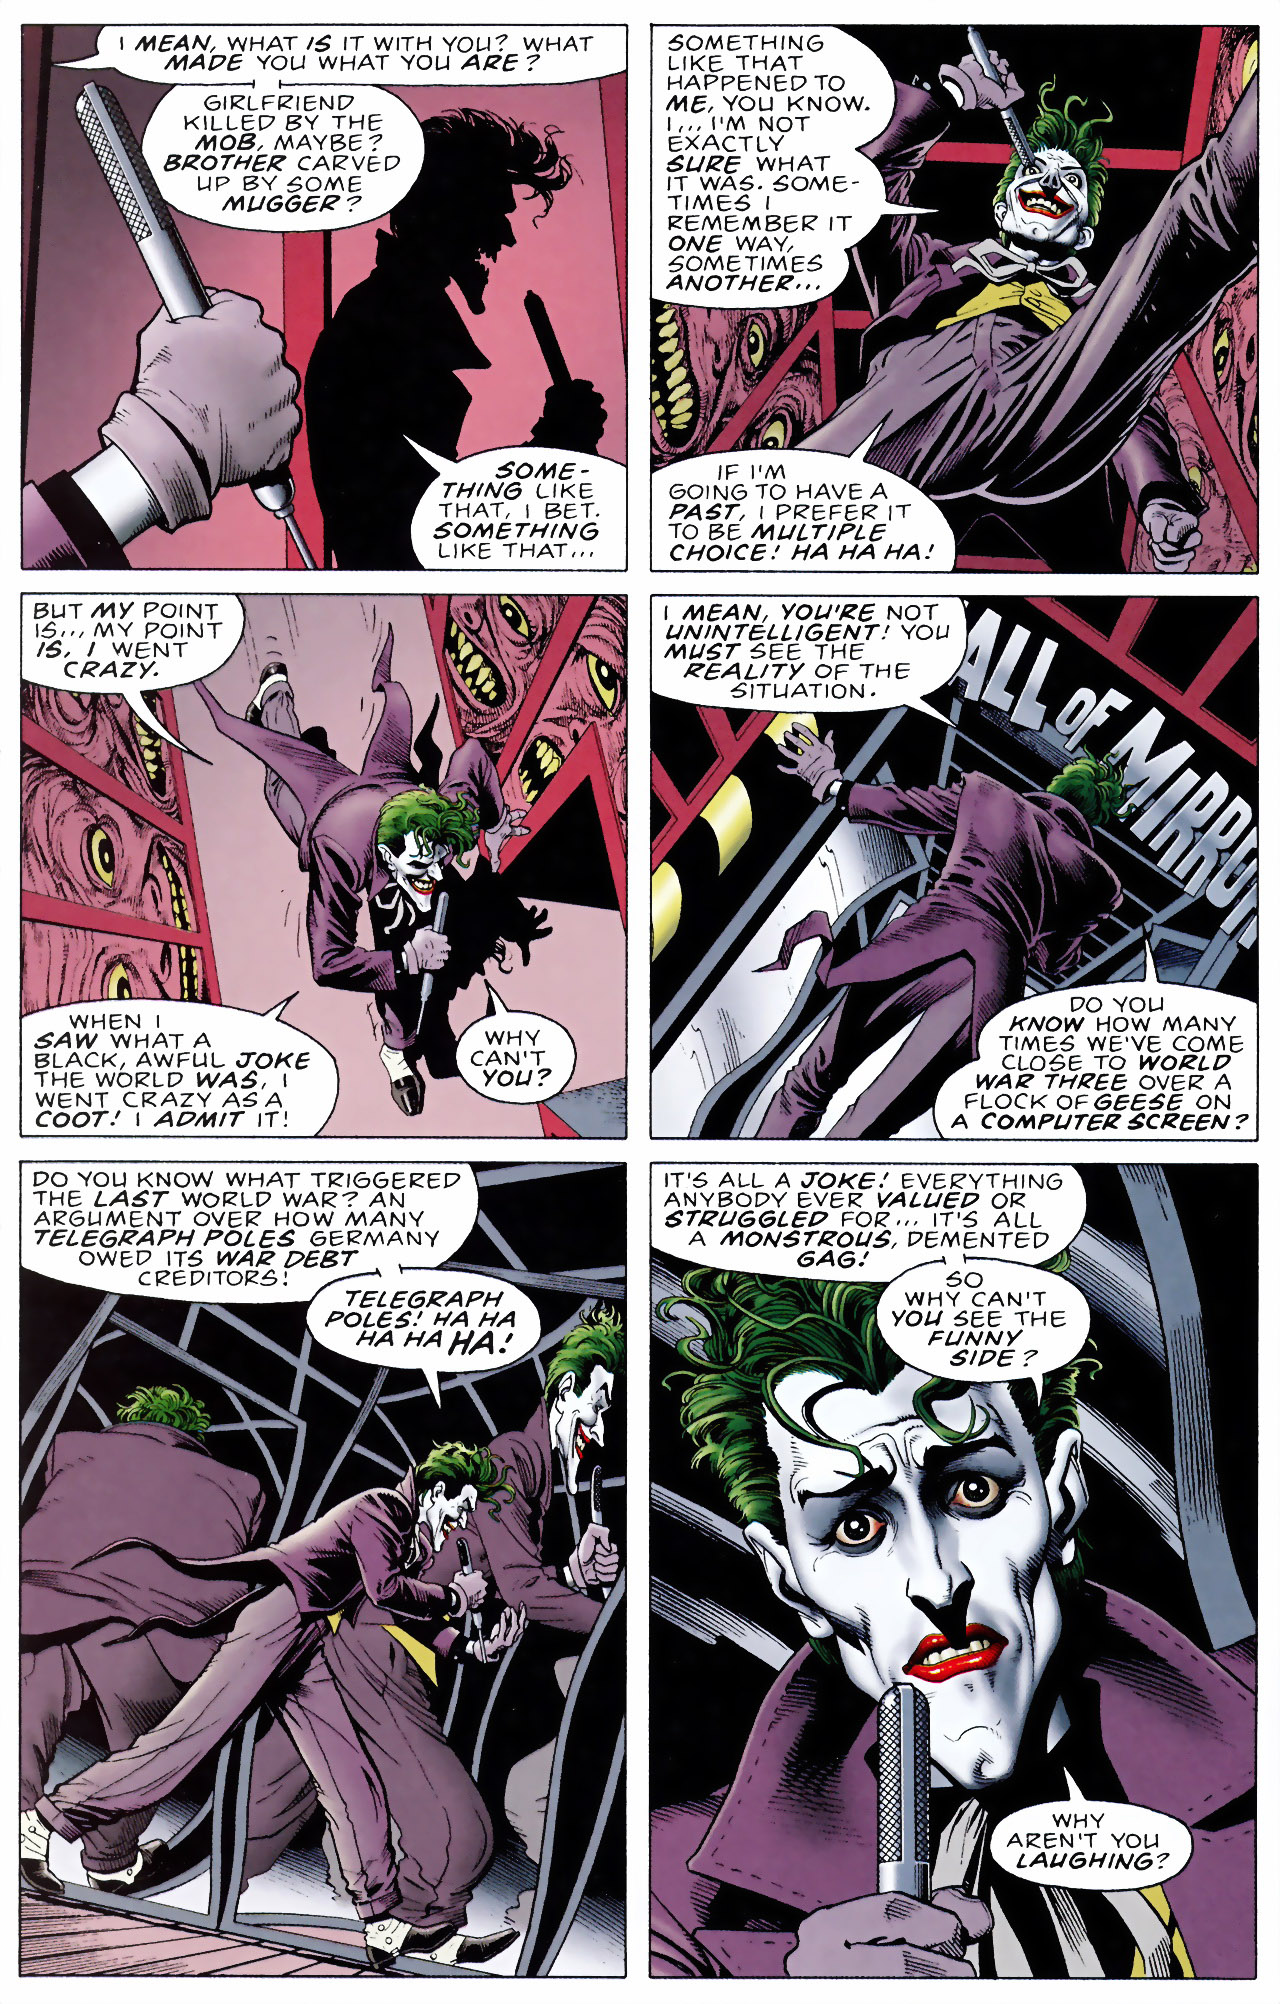 Read online Batman: The Killing Joke comic - Issue #1 - 45.